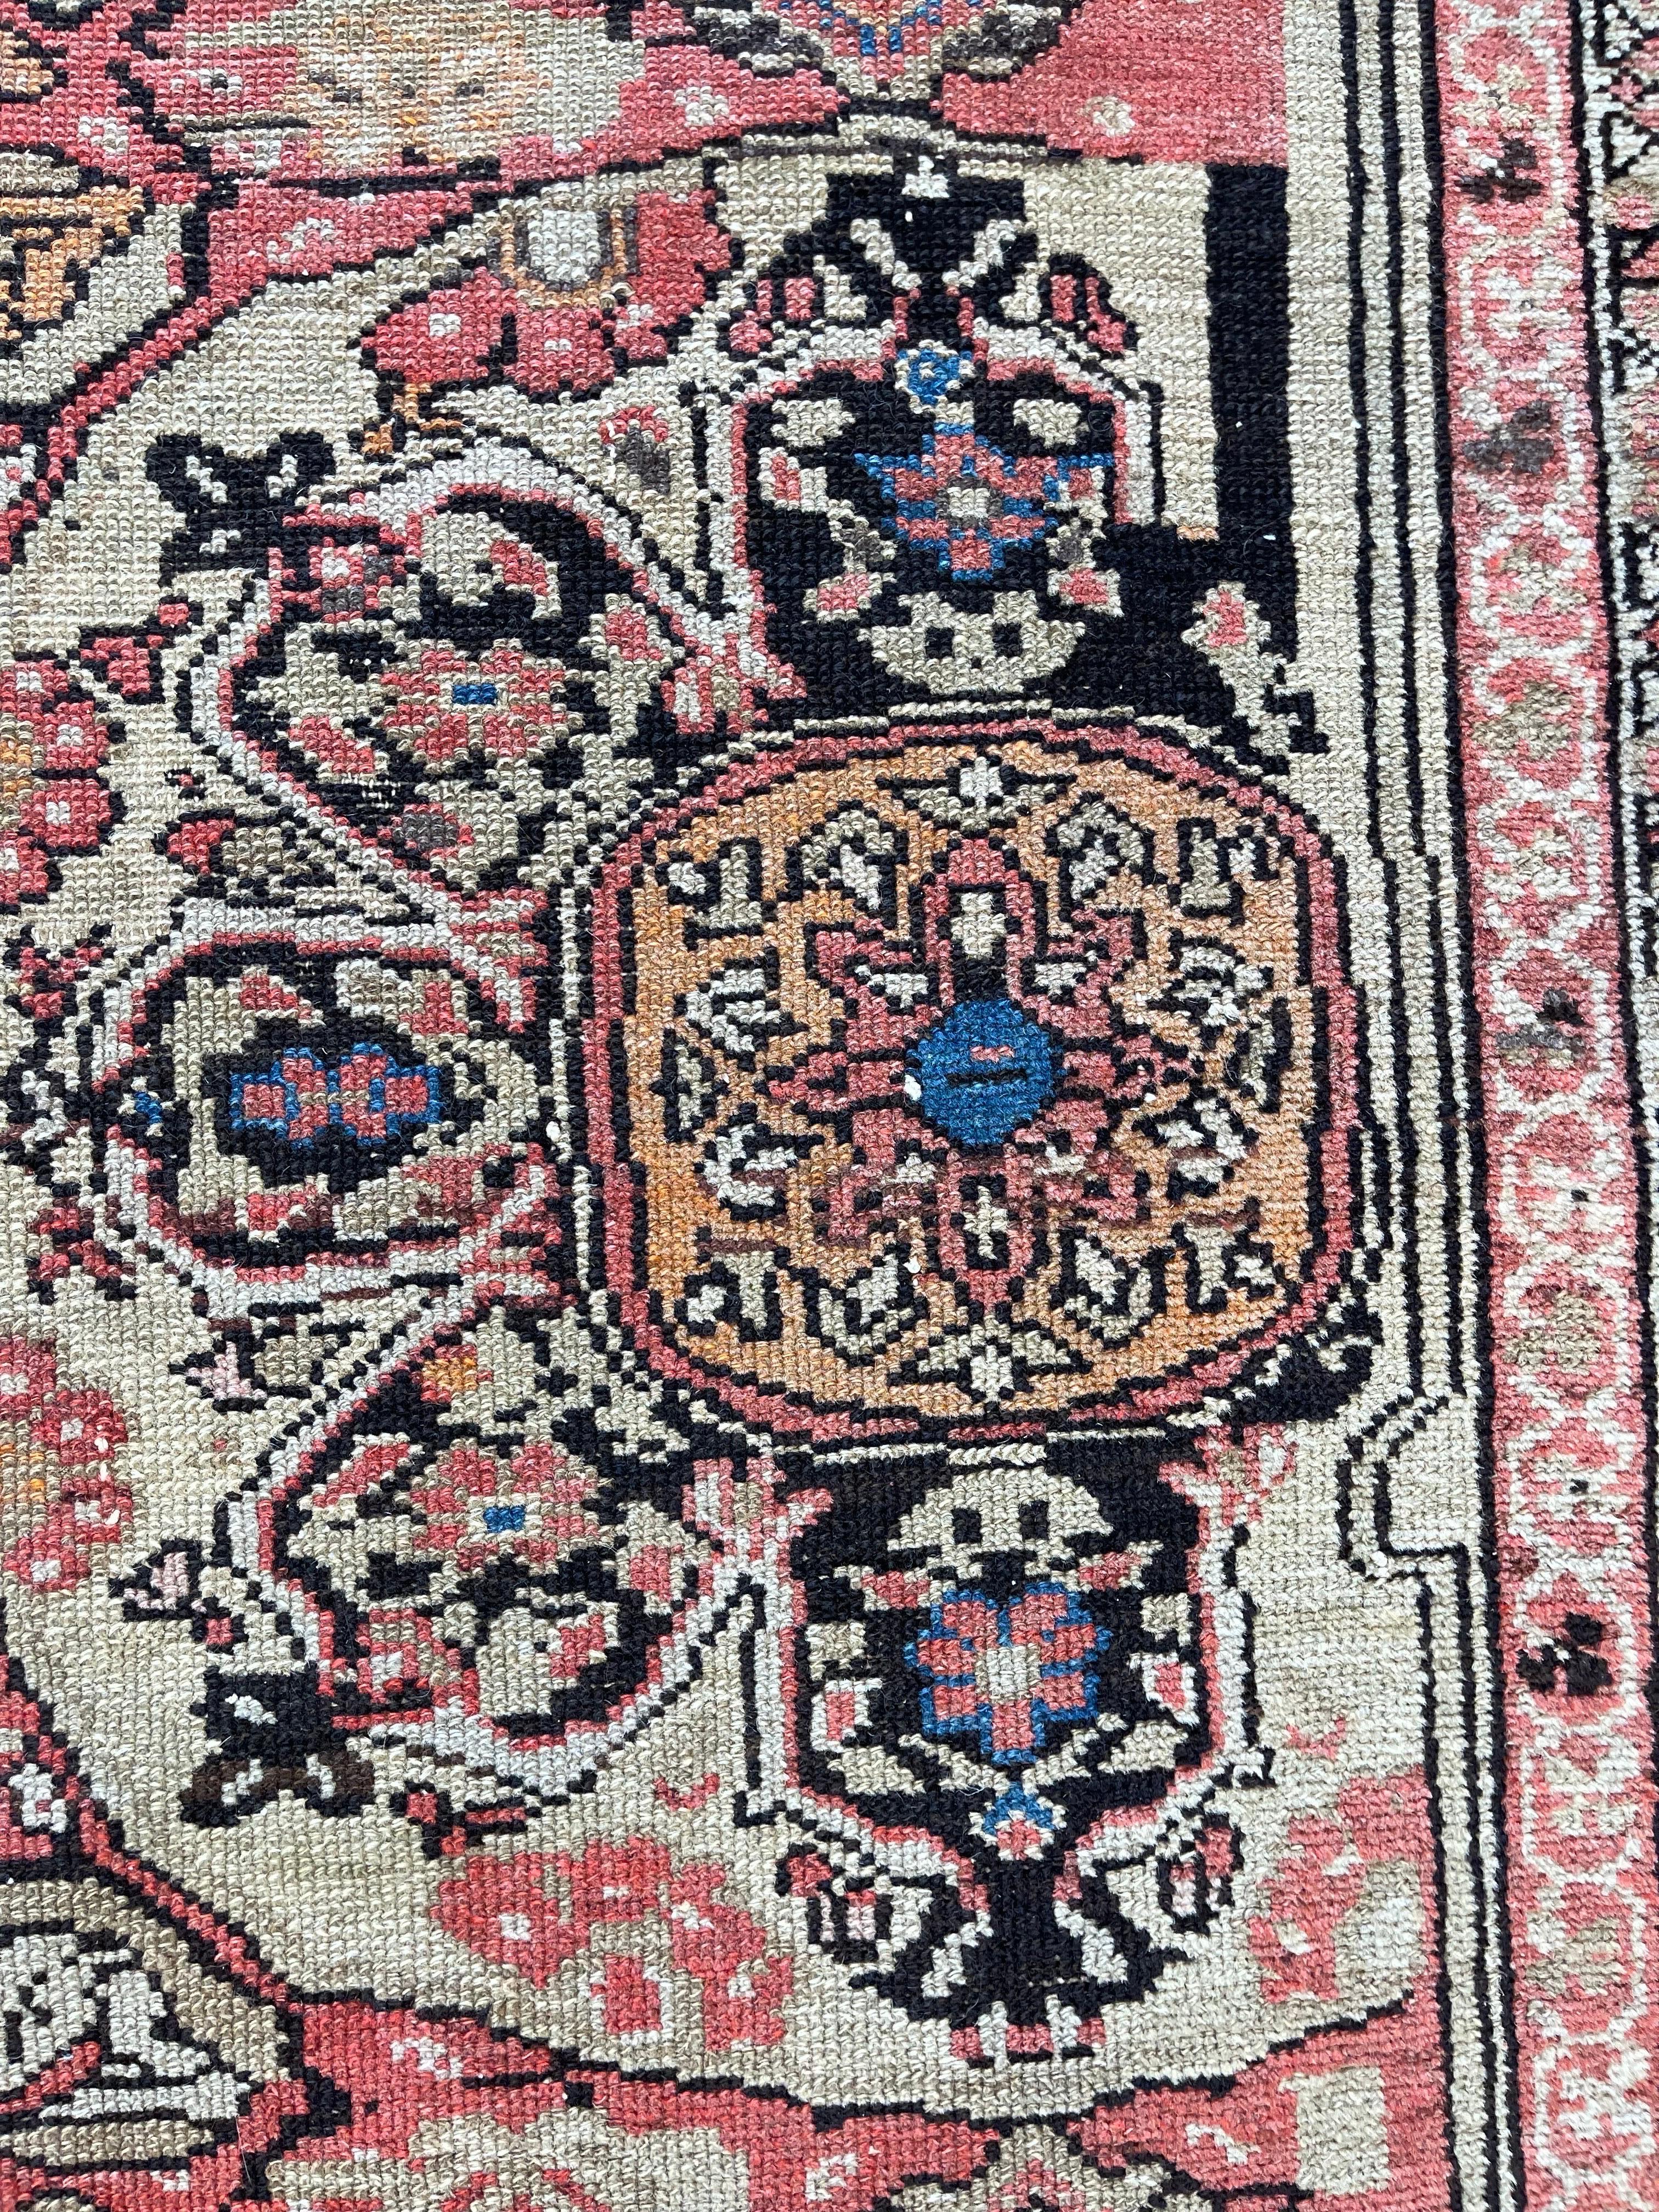 Antique Persian Malayer Vagireh Sampler Rug, circa 1920 For Sale 2